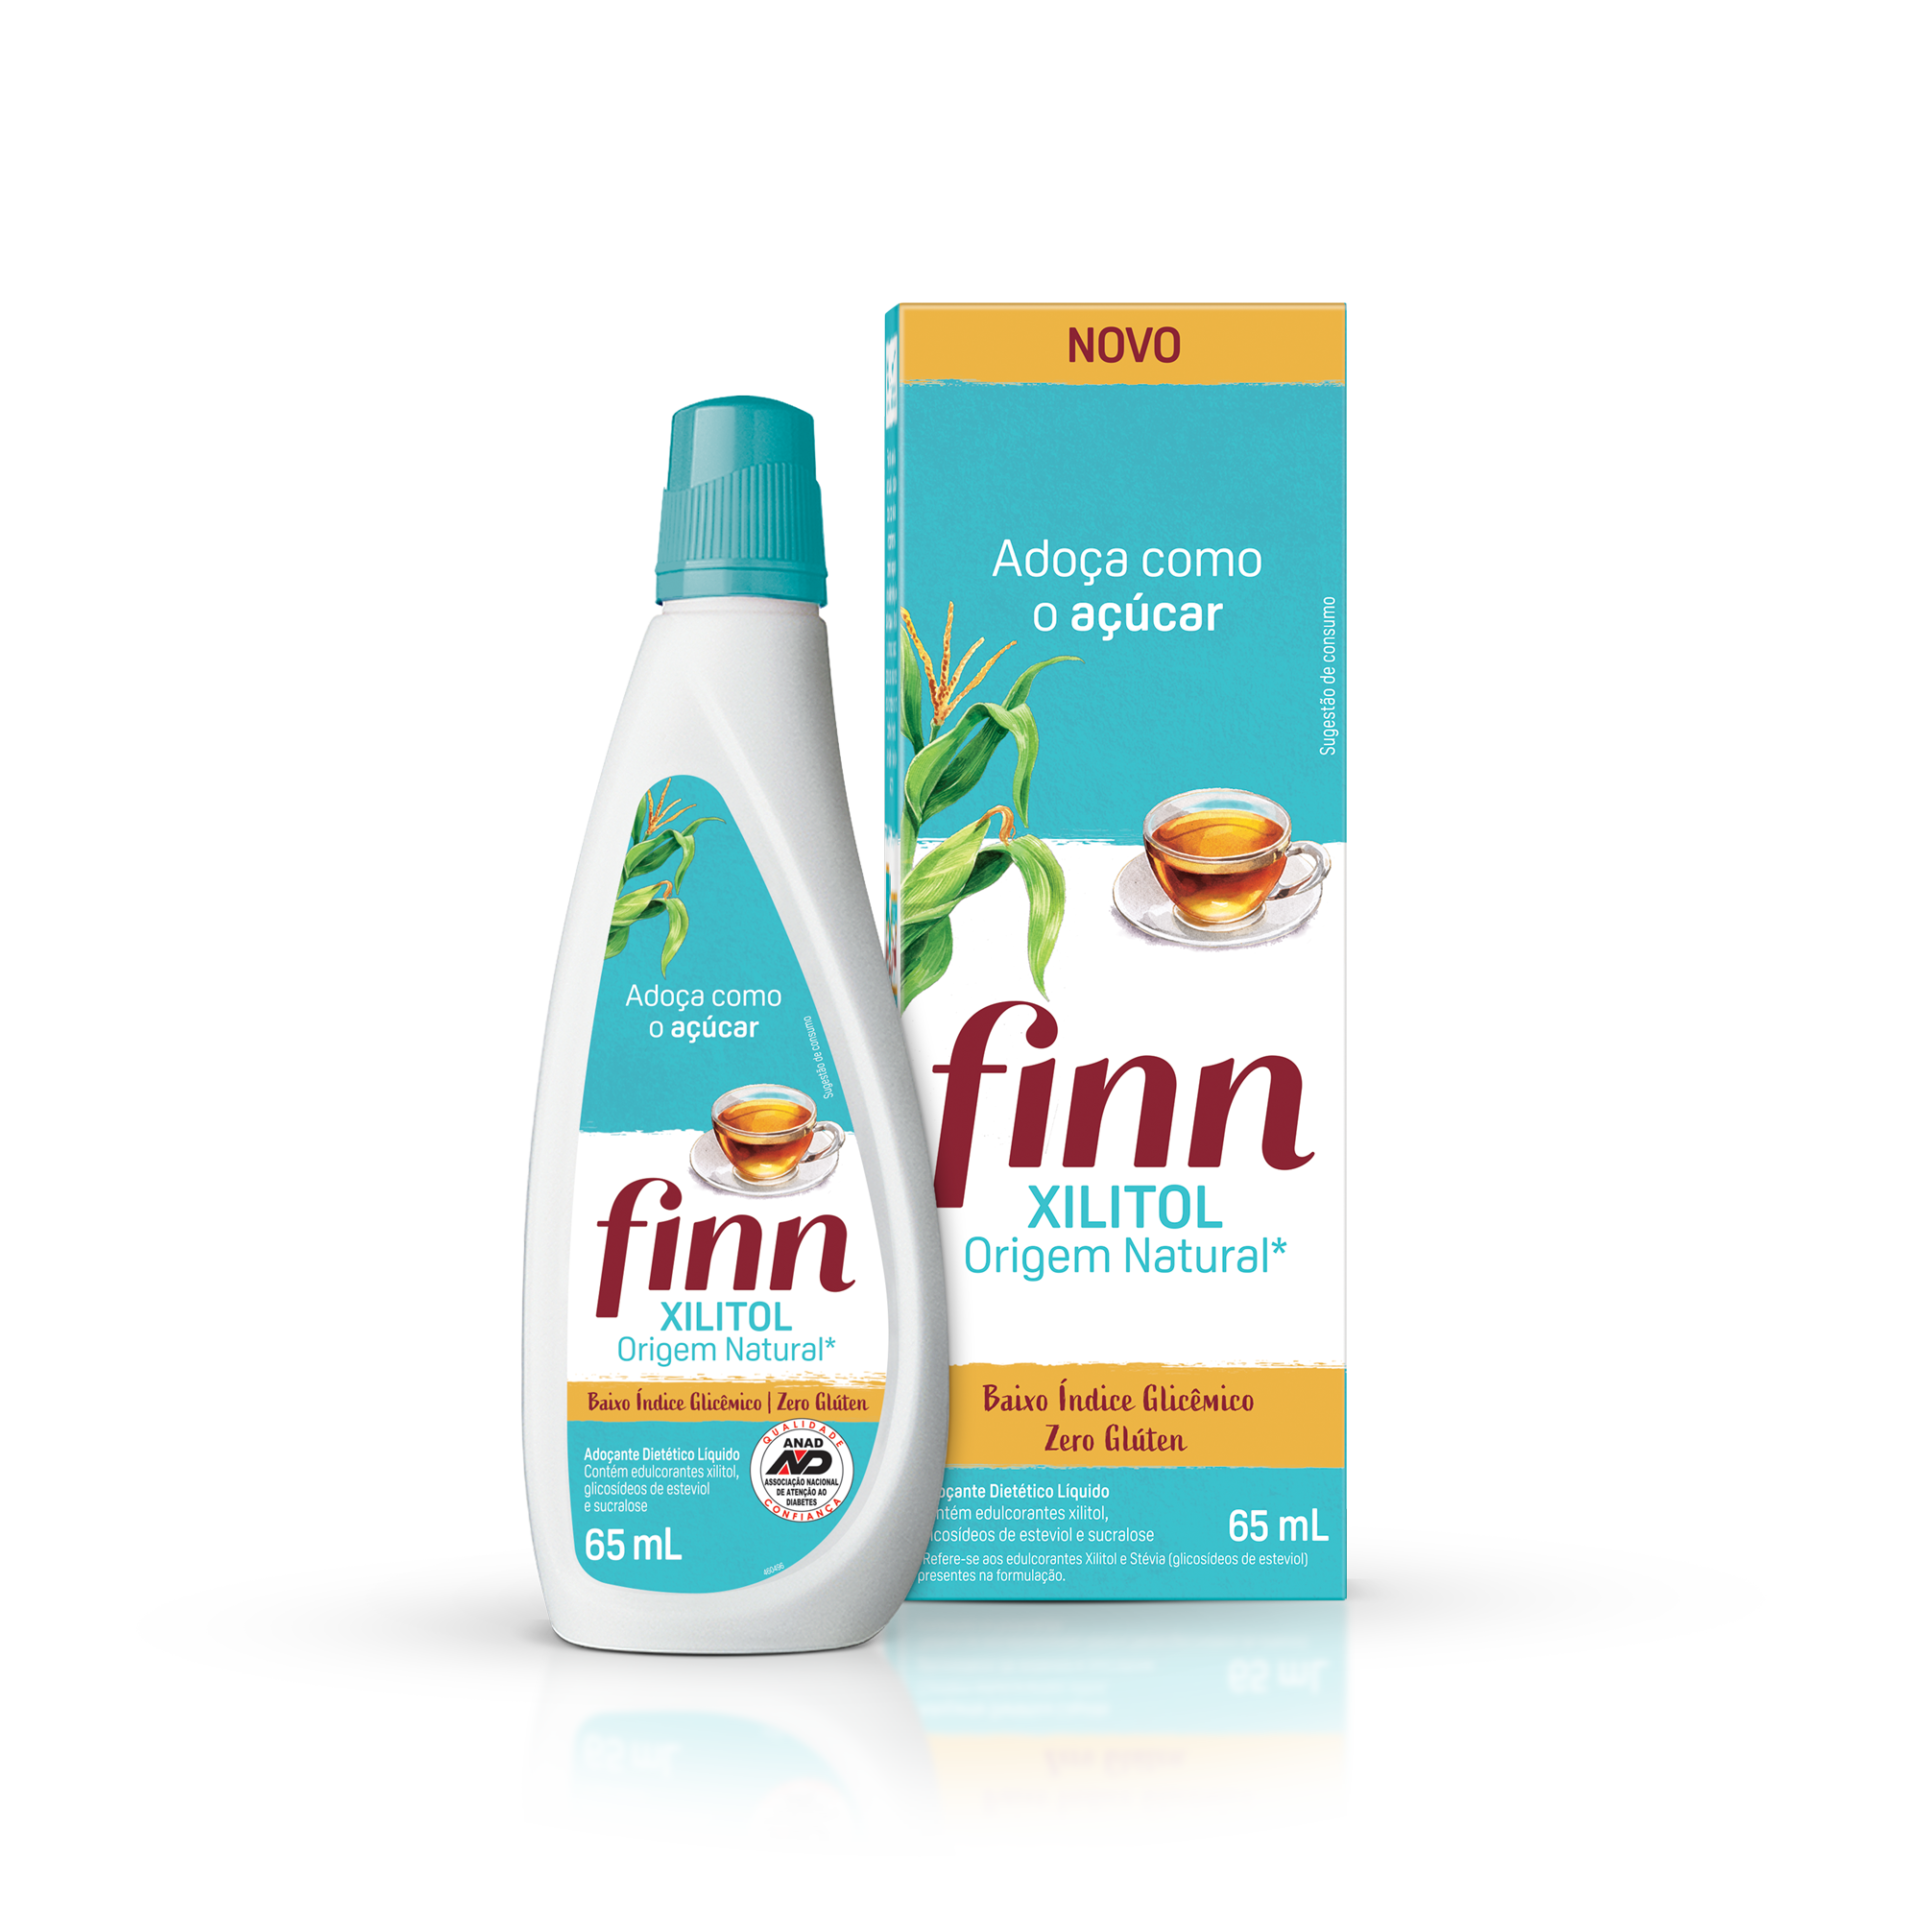 finn-xilitol-oferece-aos-consumidores-uma-opcao-para-um-estilo-de-vida-mais-saudavel-e-natural